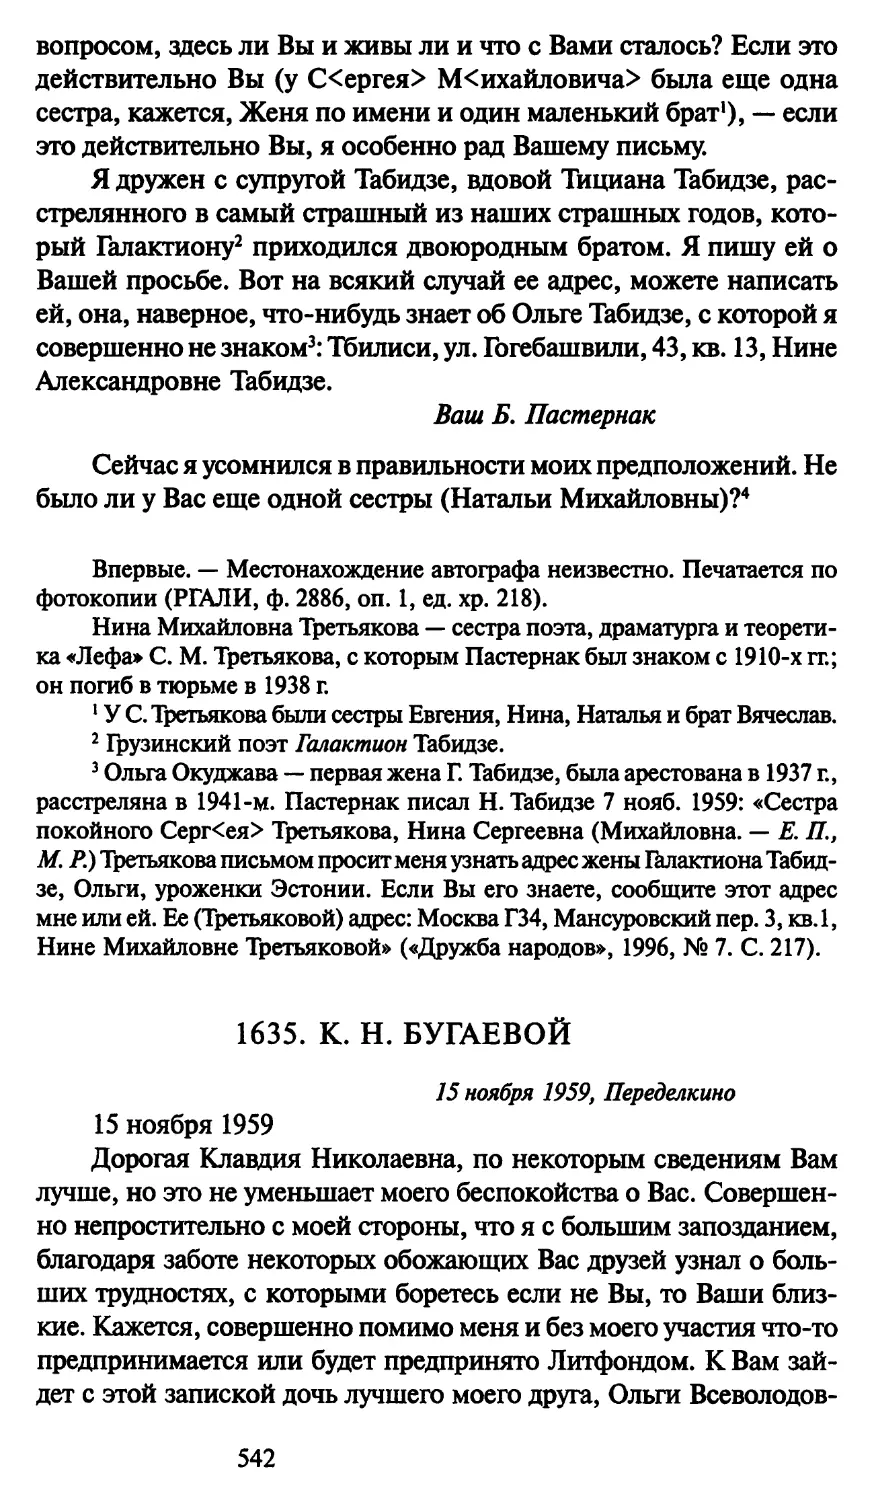 1635. К. Н. Бугаевой 15 ноября 1959